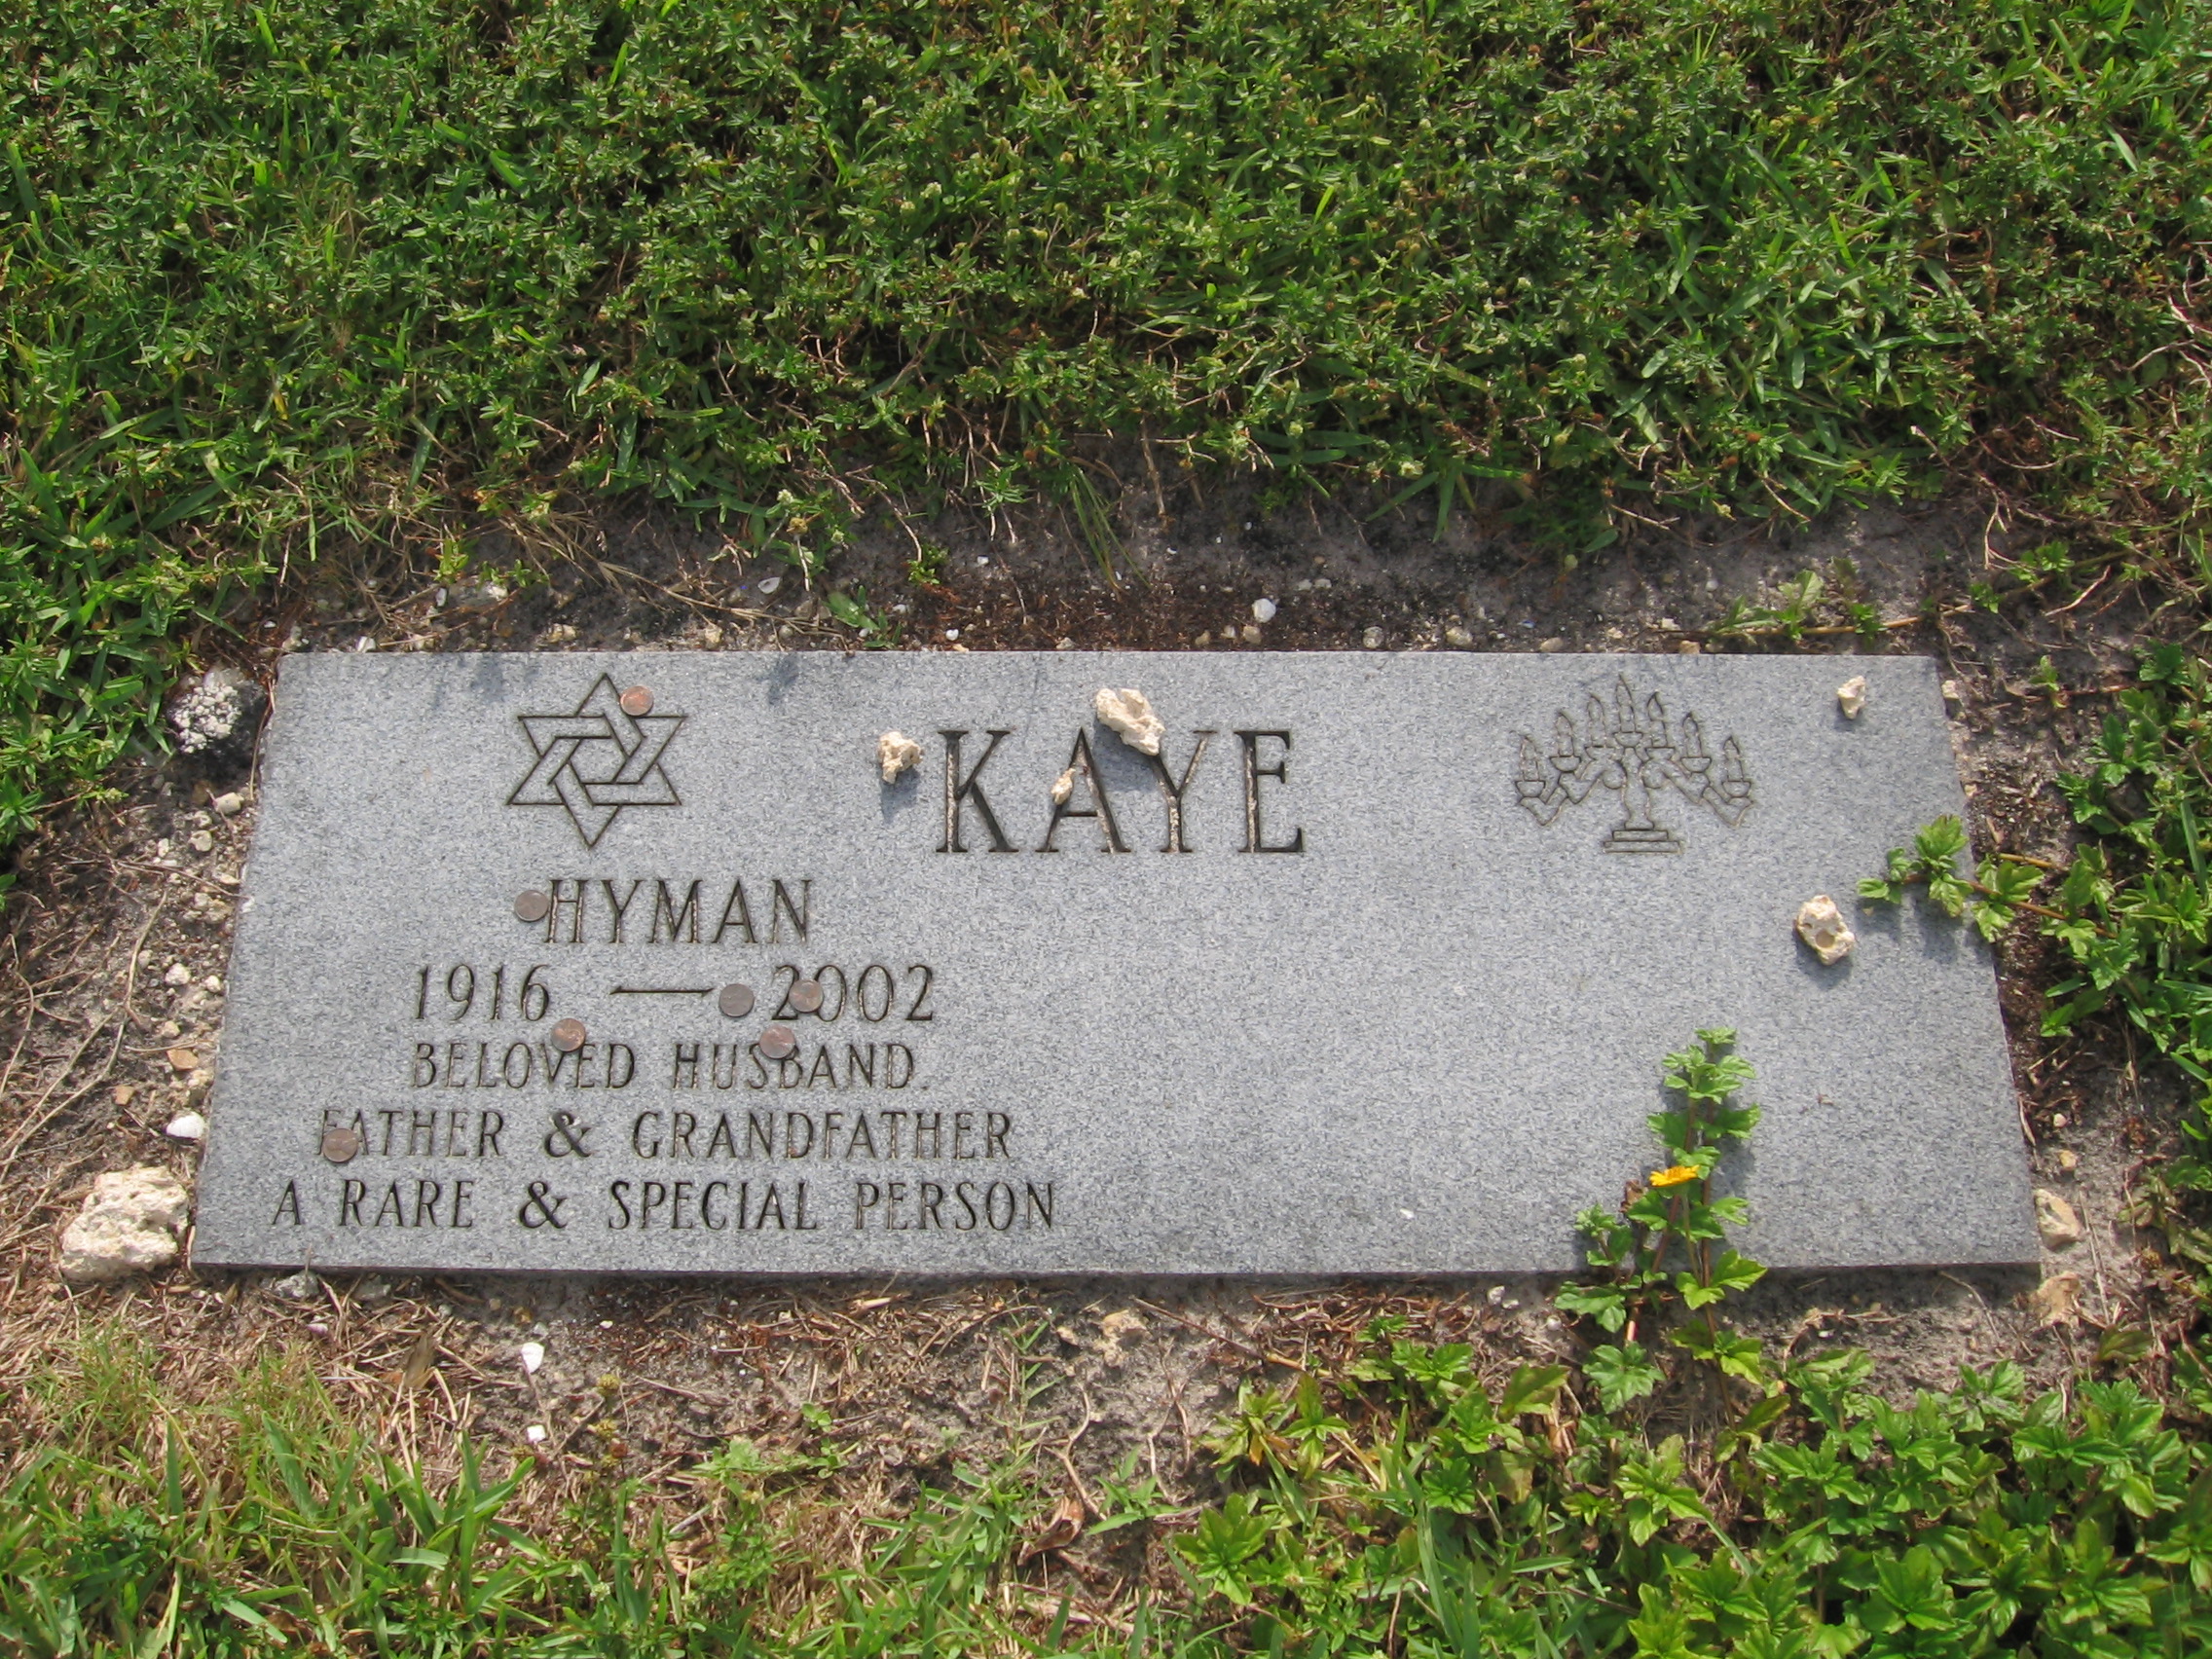 Hyman Kaye